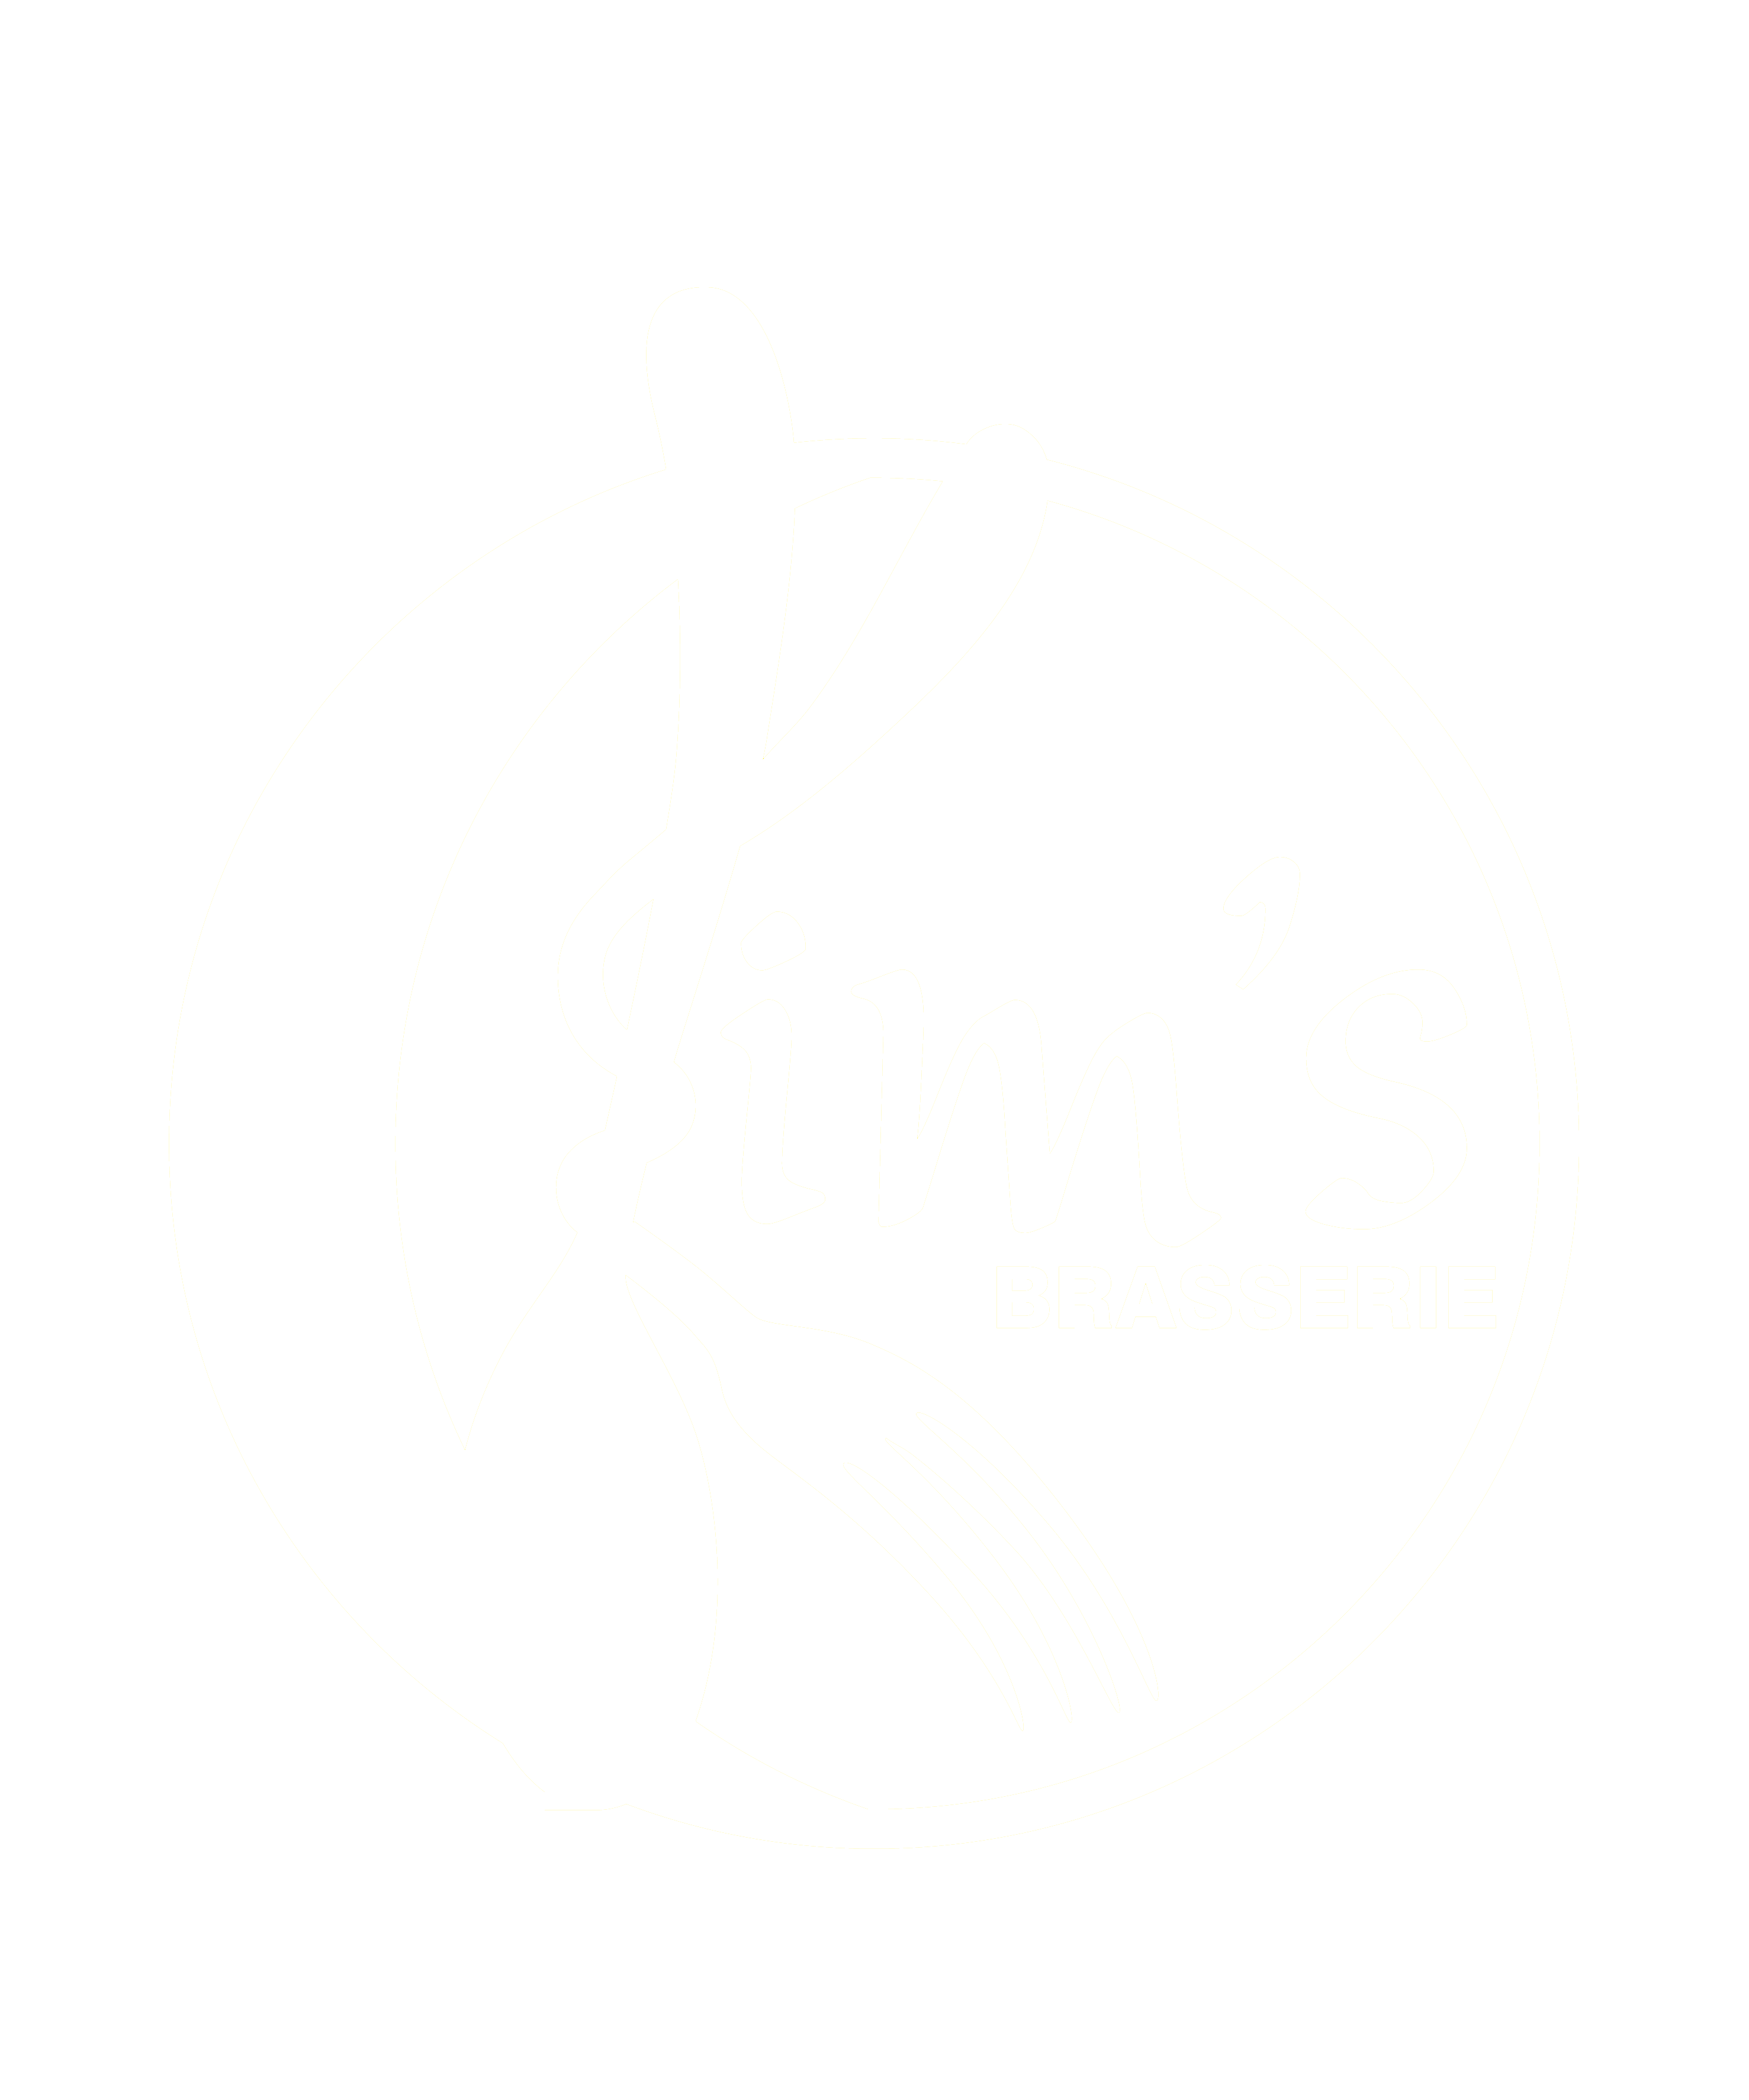 Kim's Brasserie